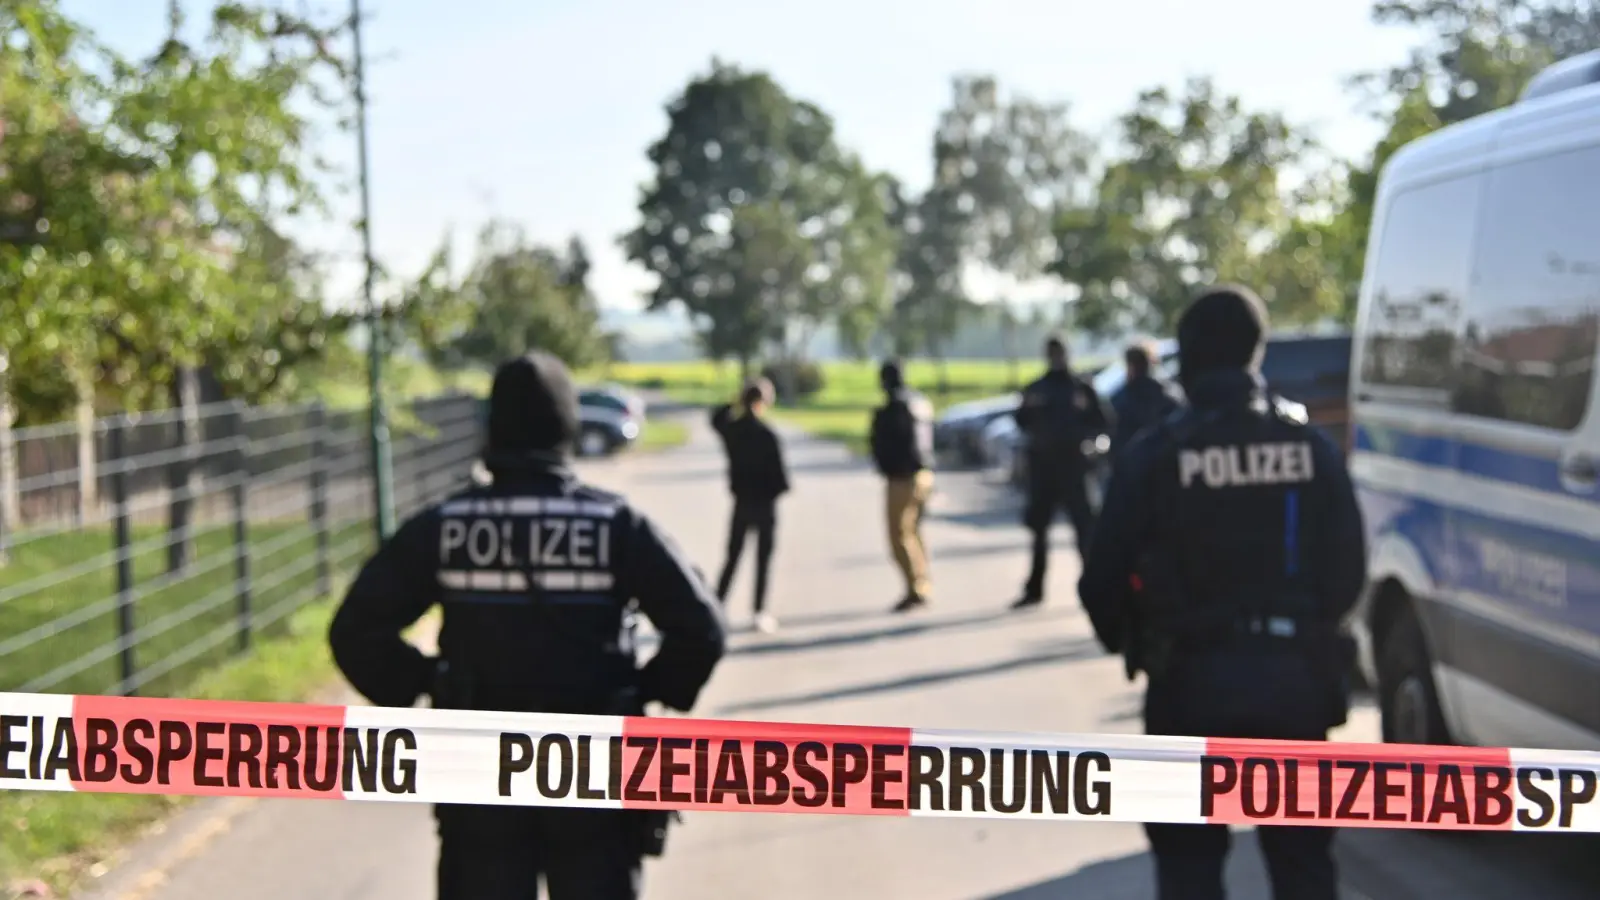 Einsatzkräfte der Polizei stehen hinter einer Polizeiabsperrung nach einer Razzia in Hesselbronn. (Foto: Jan-Philipp Strobel/dpa)